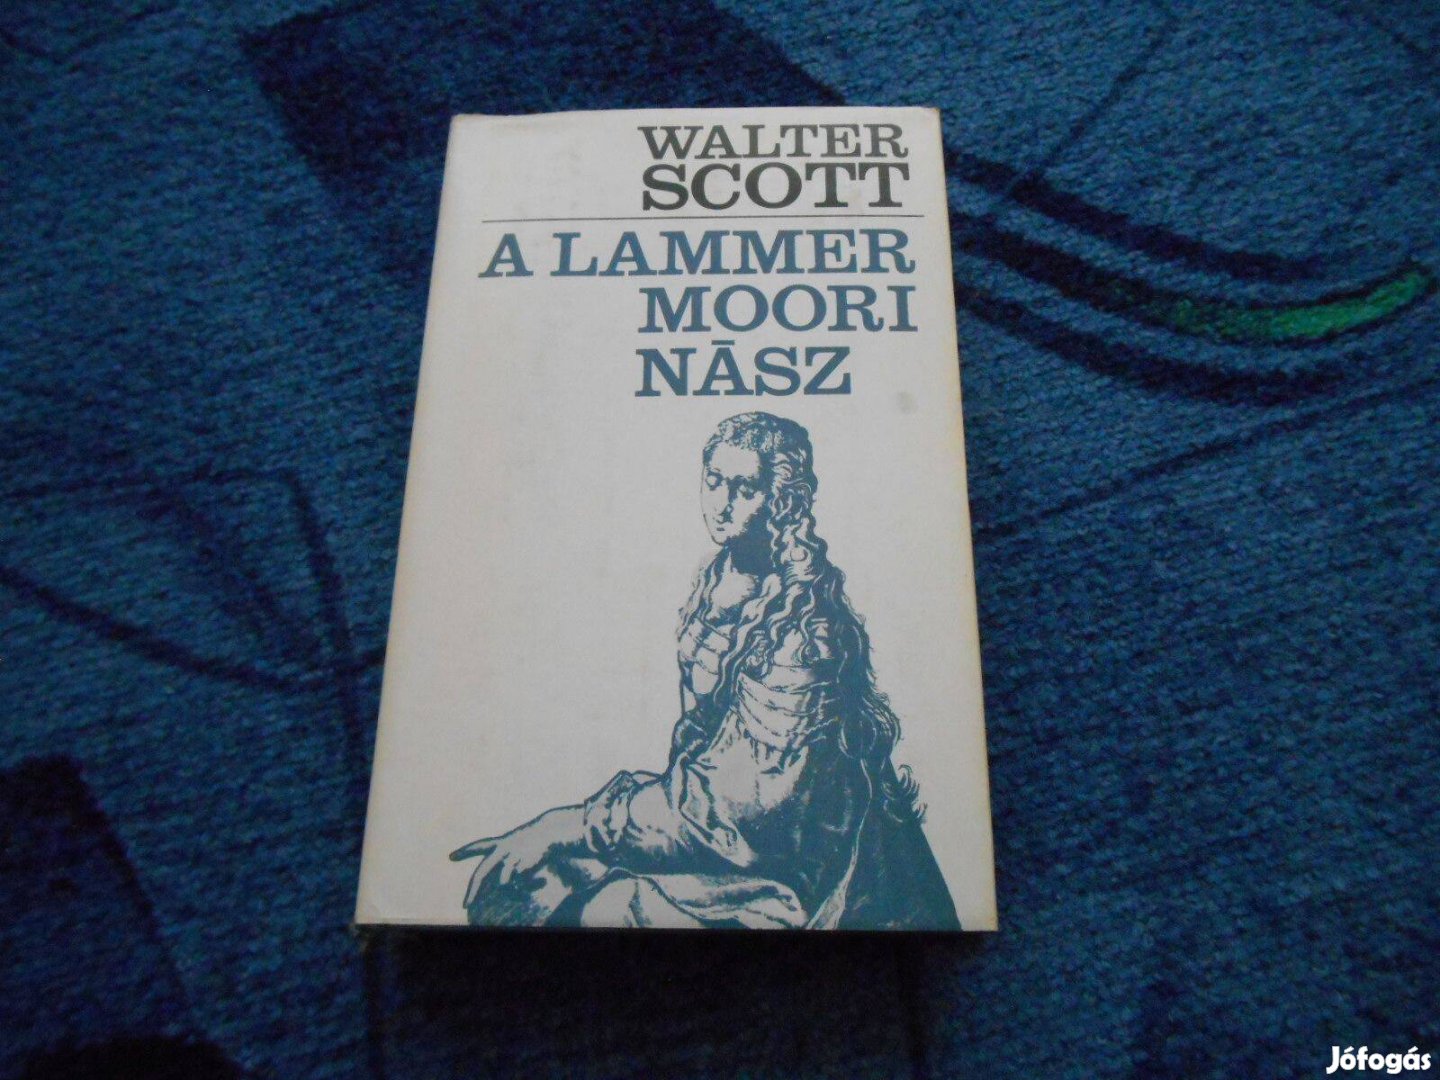 Walter Scott: A lammermoori nász